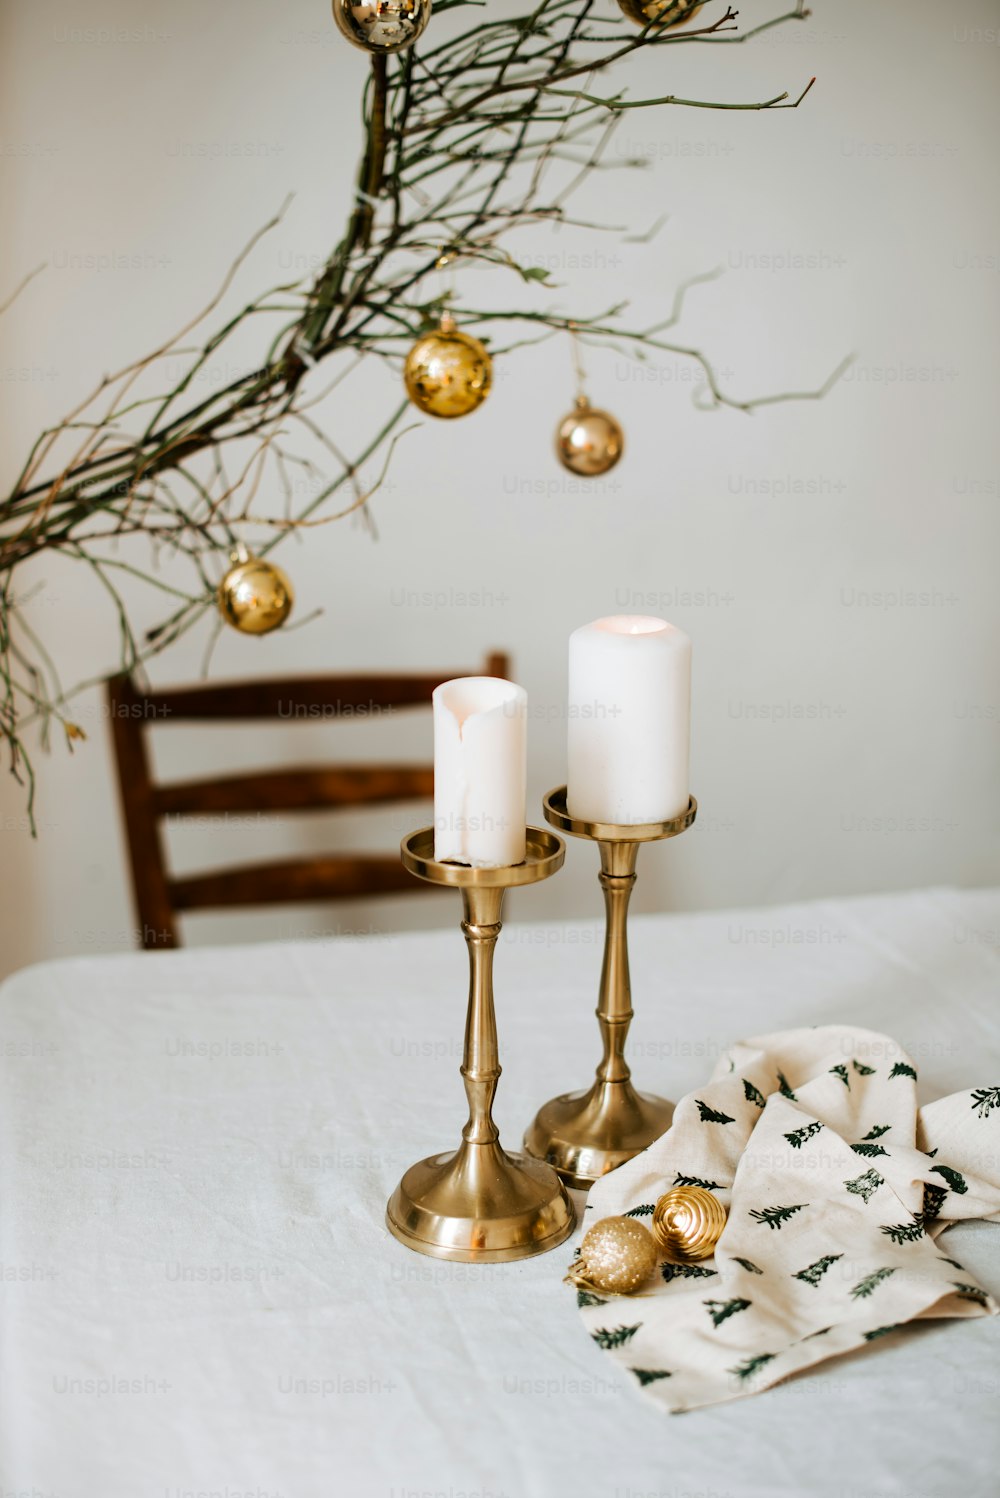 테이블 위에 앉아 있는 두 개의 촛불